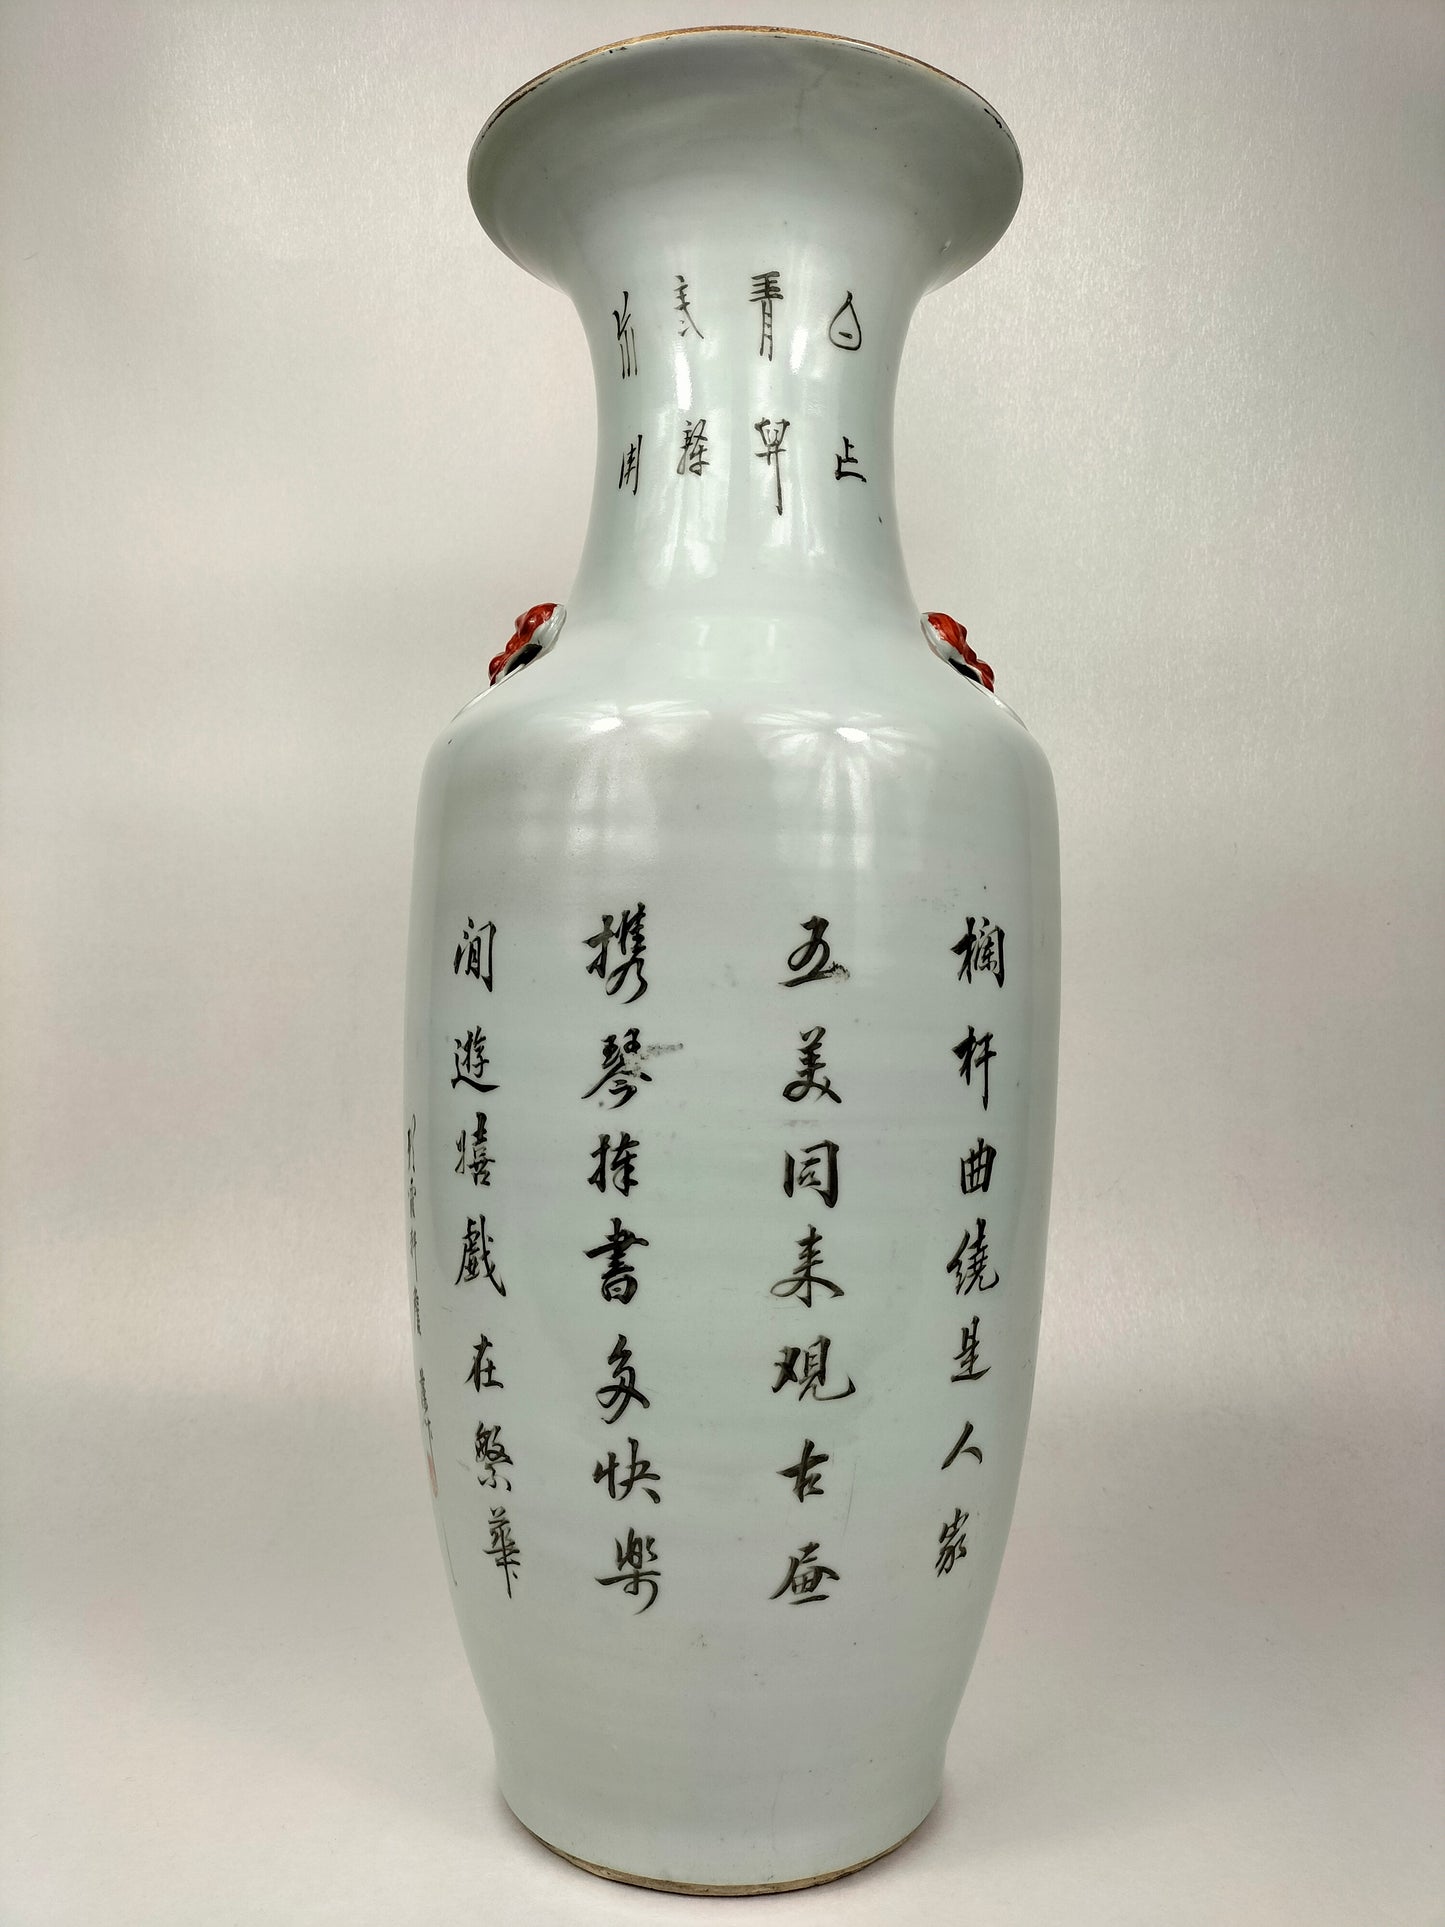 مزهرية تشيانجيانغ كاي الصينية العتيقة الكبيرة // فترة الجمهورية (1912-1949)